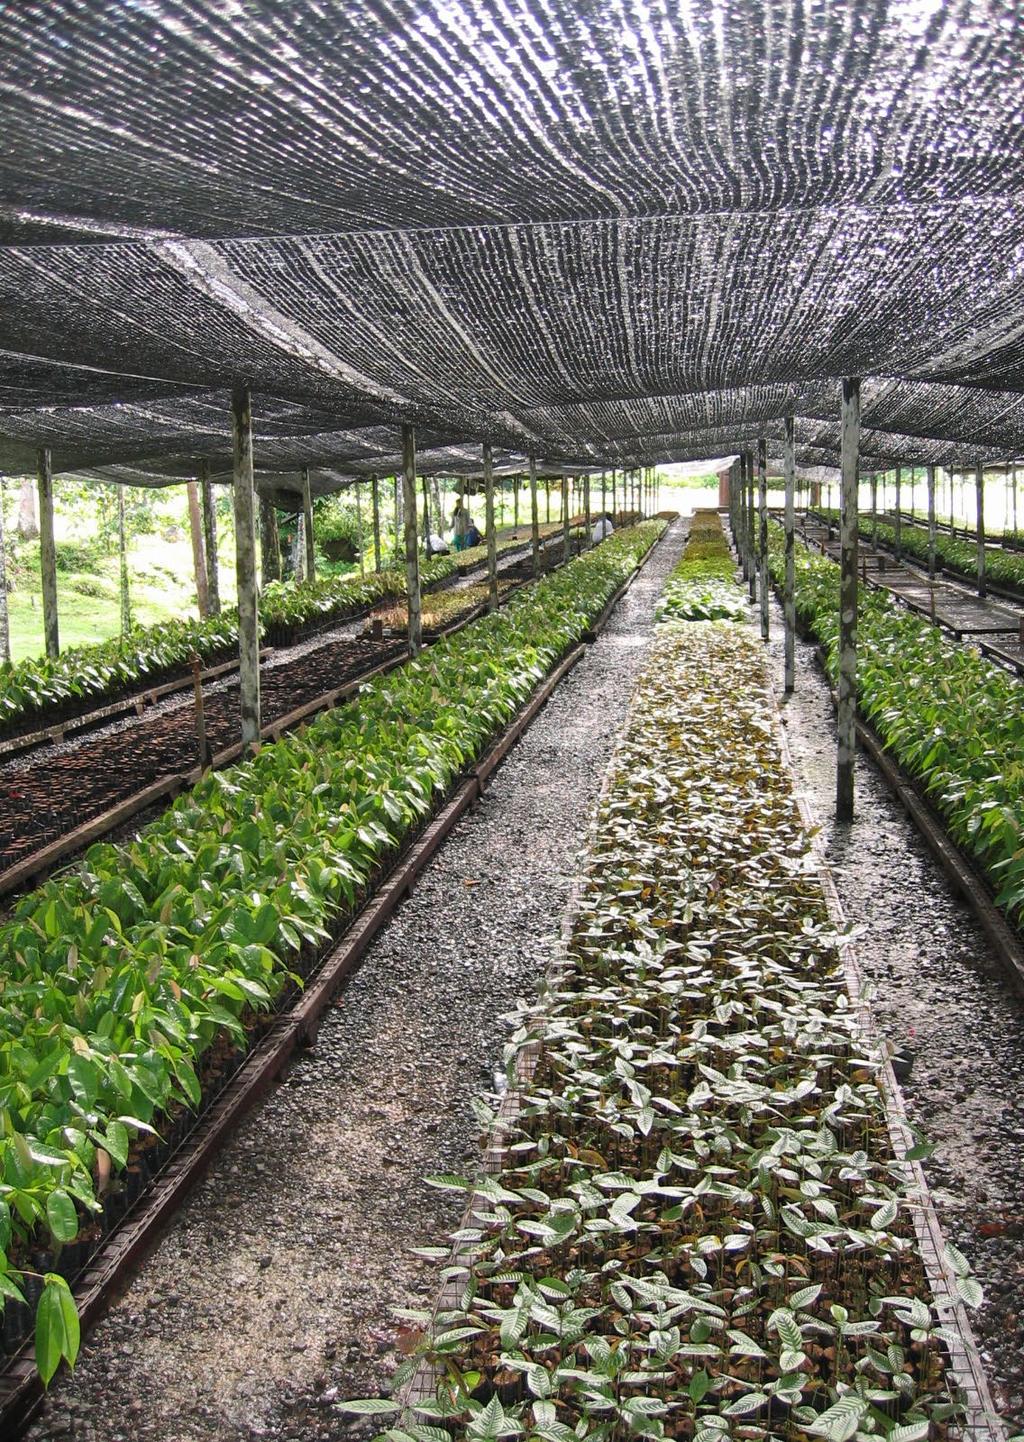 Het project stimuleert op een slimme manier de natuurlijke regeneratie, waardoor binnen vijftig jaar alweer reuzenbomen te bewonderen zijn in het tropisch regenwoud.